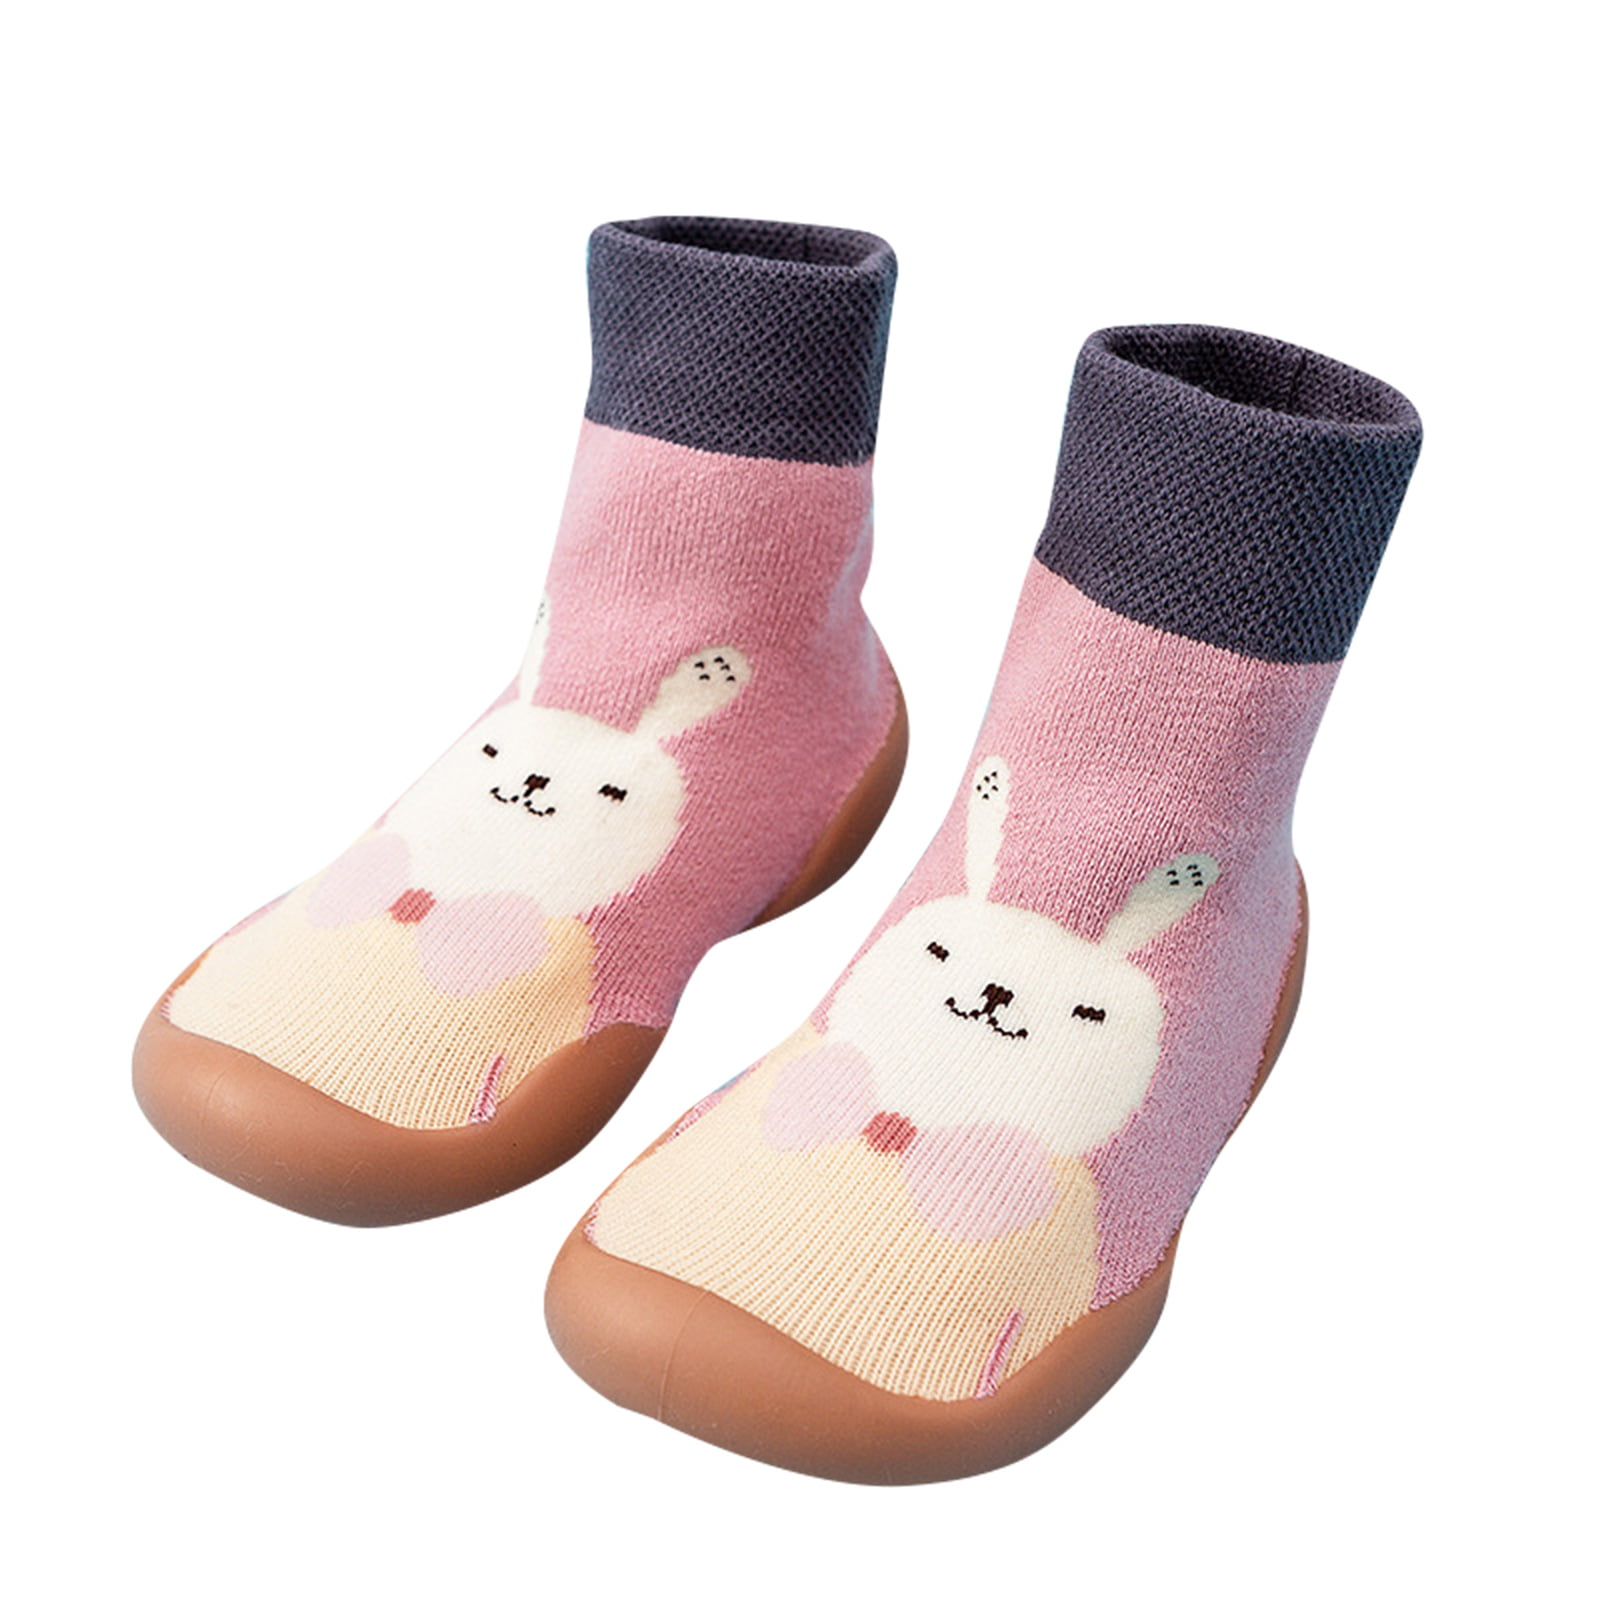 Kids Boy Girls Cartoon Cotton Socks Soft Warm Sport Ankle Trainer Childrens Gift